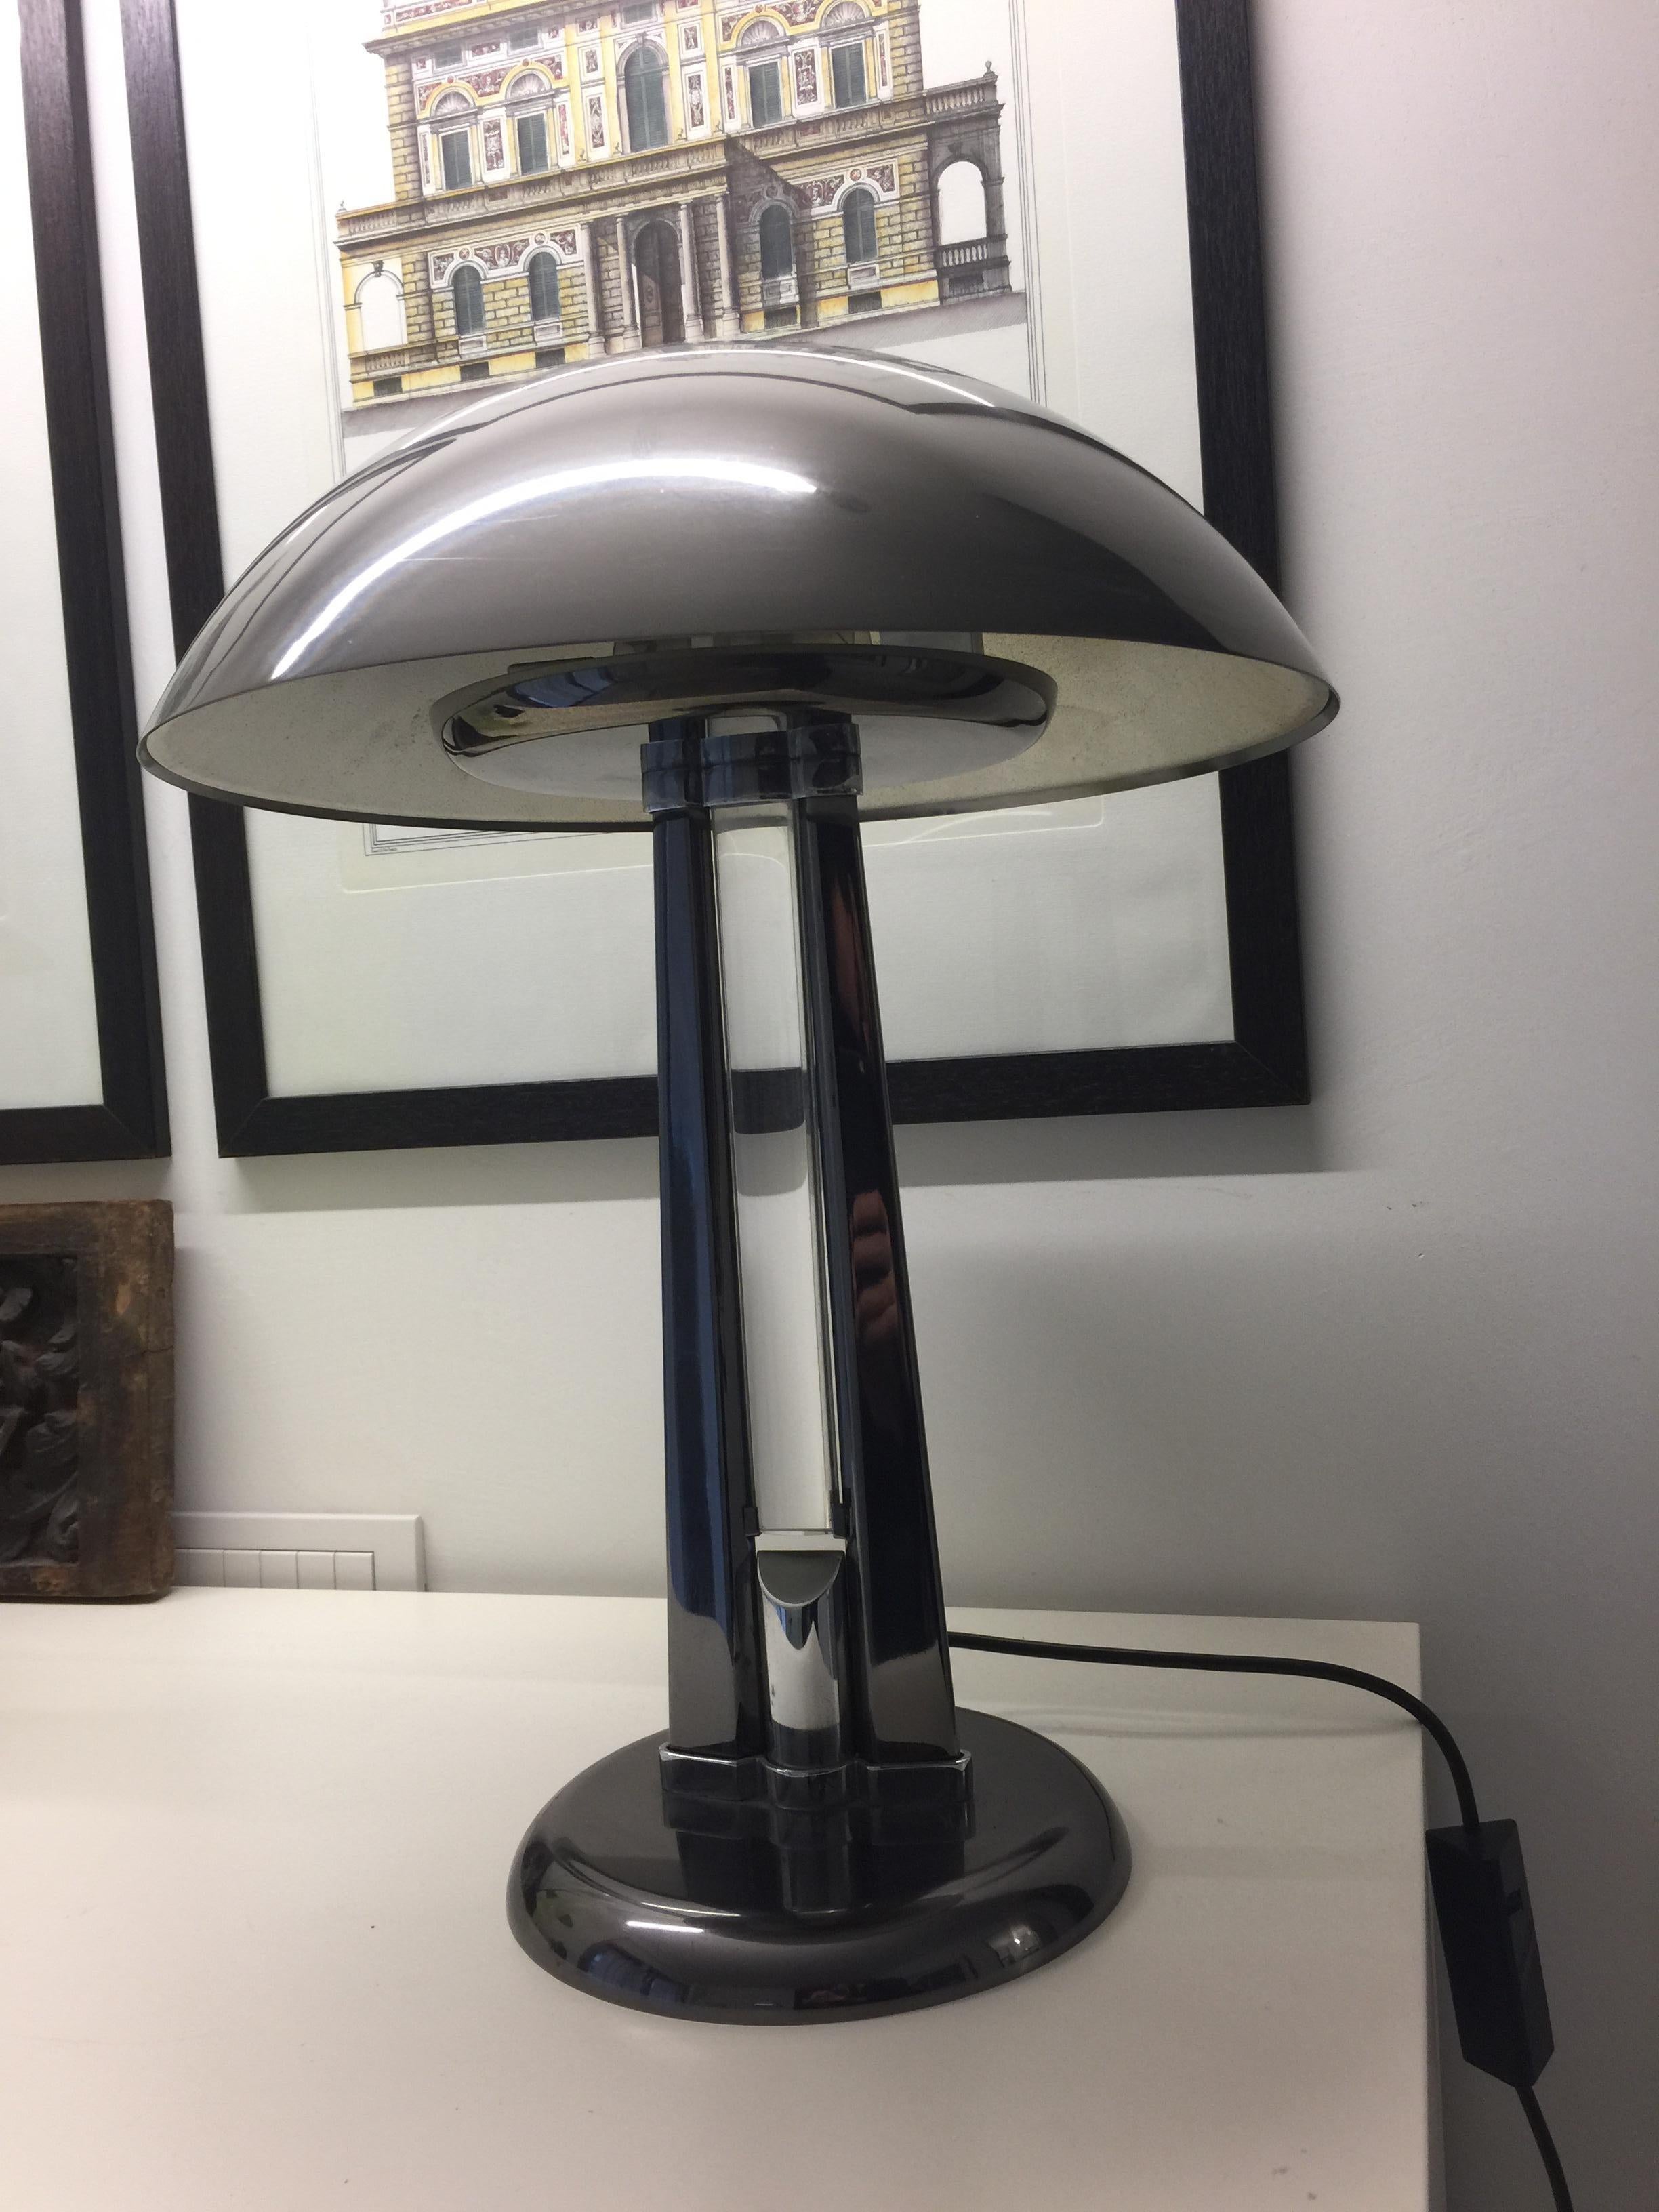 Rare Signed Italian Vintage Table Lamp by Oscar Torlasco for Stilkronen, 1970s For Sale 2